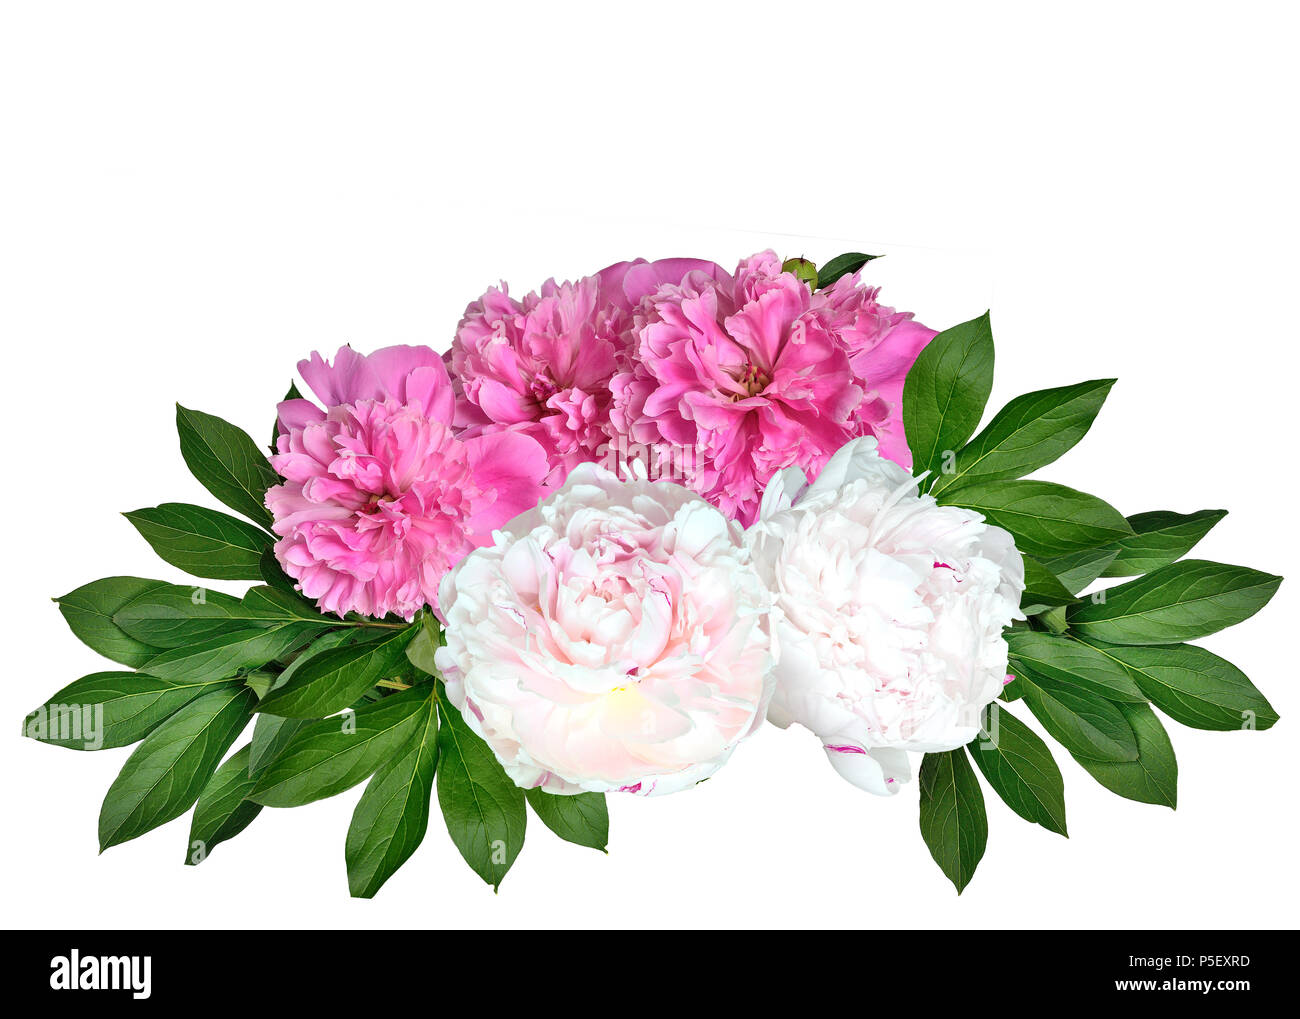 Bouquet de hermosas flores rosadas y blancas exuberante peonías con hojas aislado sobre un fondo blanco - primavera o verano patrón floral Foto de stock